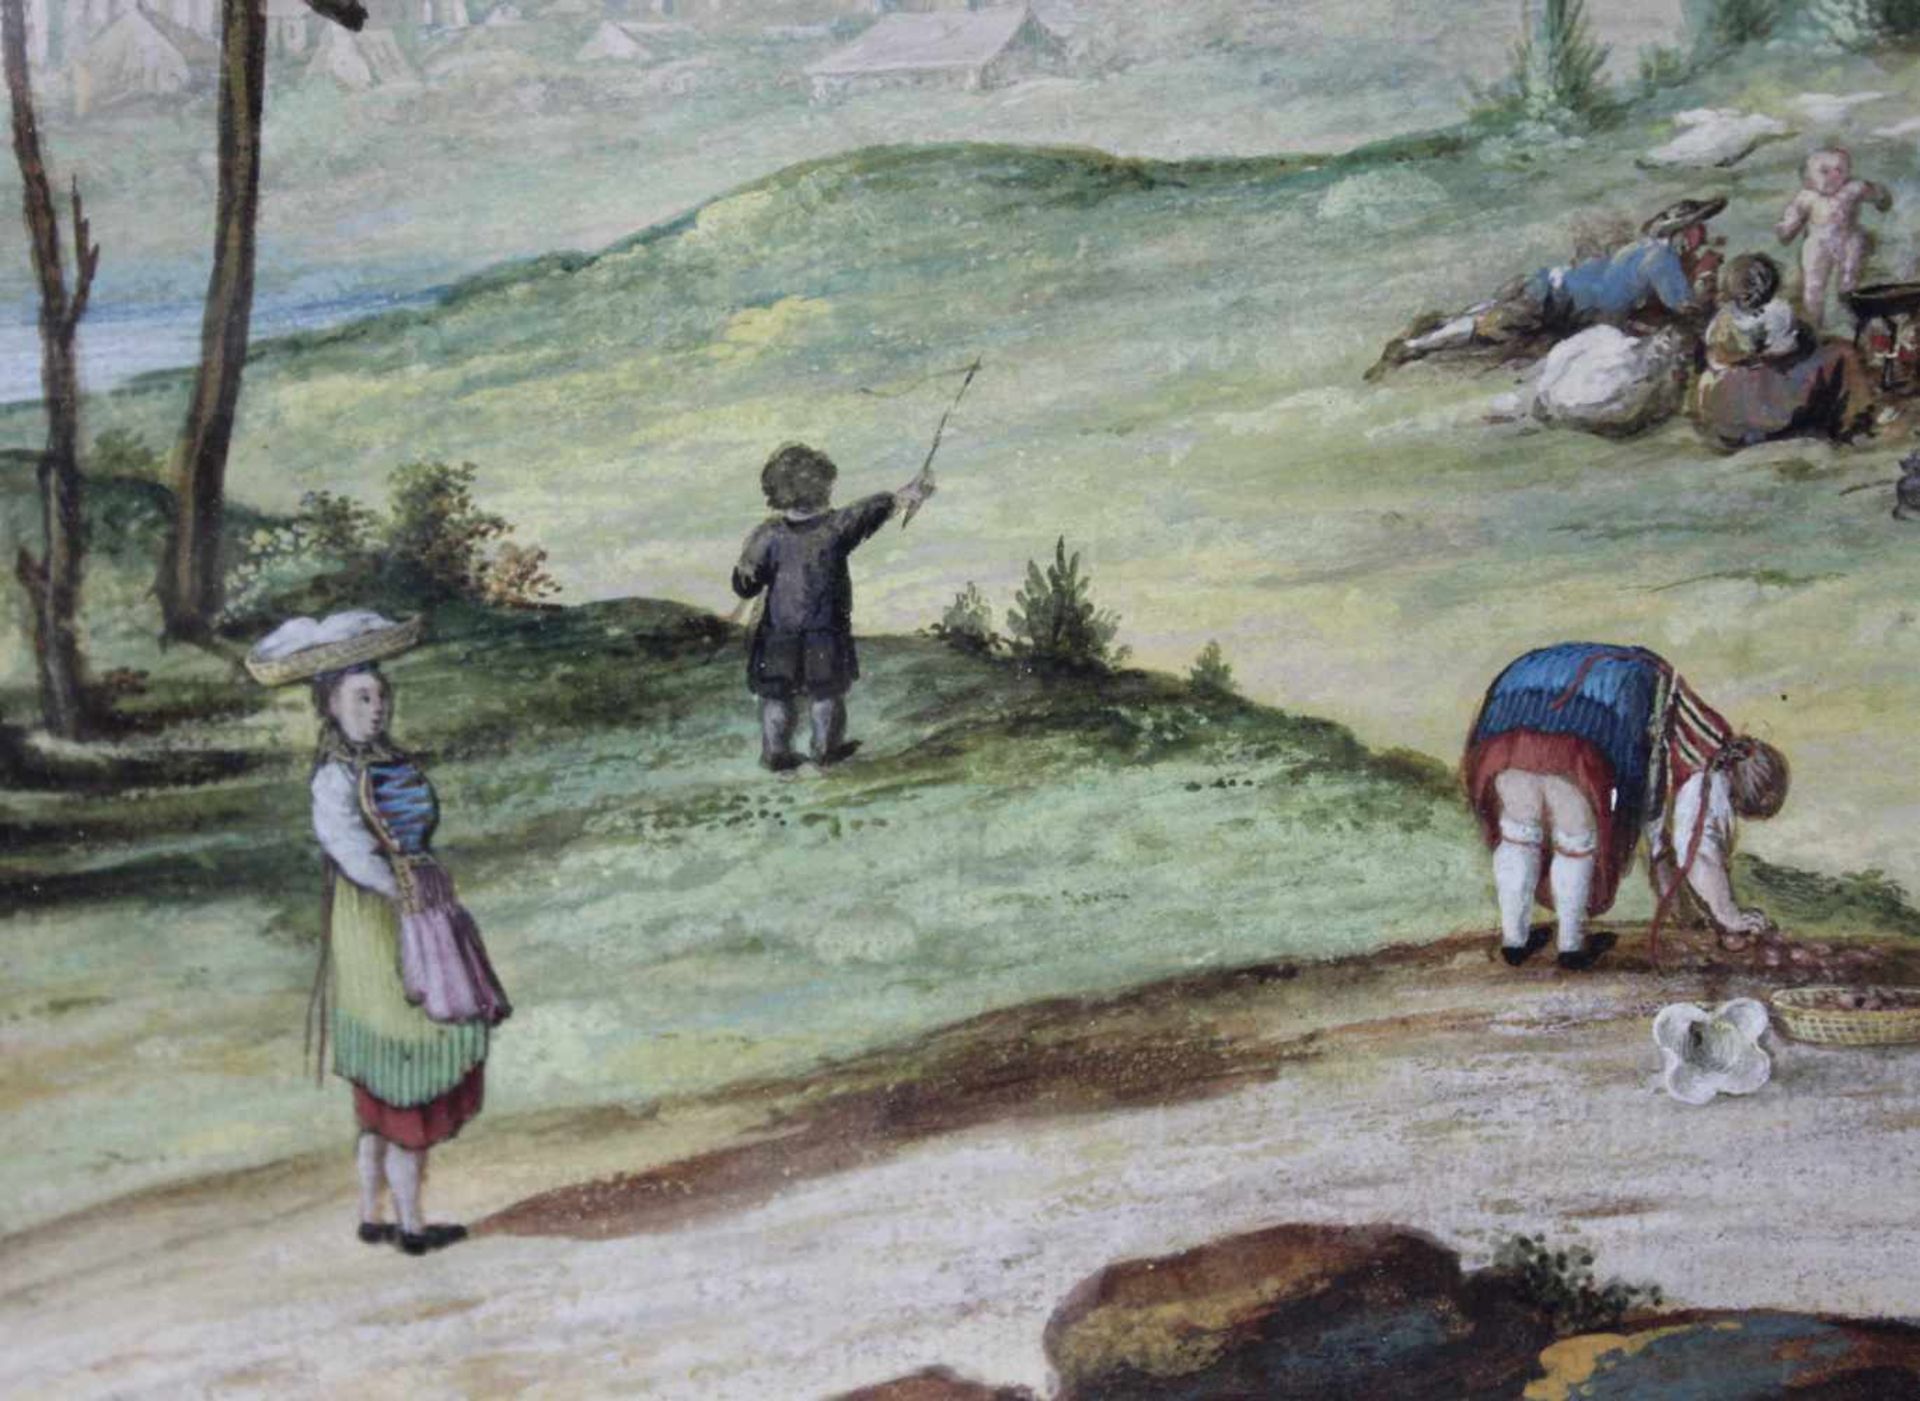 UNSIGNIERT (XIX). Landleben in den Schweizer Alpen. 28 cm x 21 cm im Ausschnitt. Gouache auf Papier. - Bild 5 aus 7